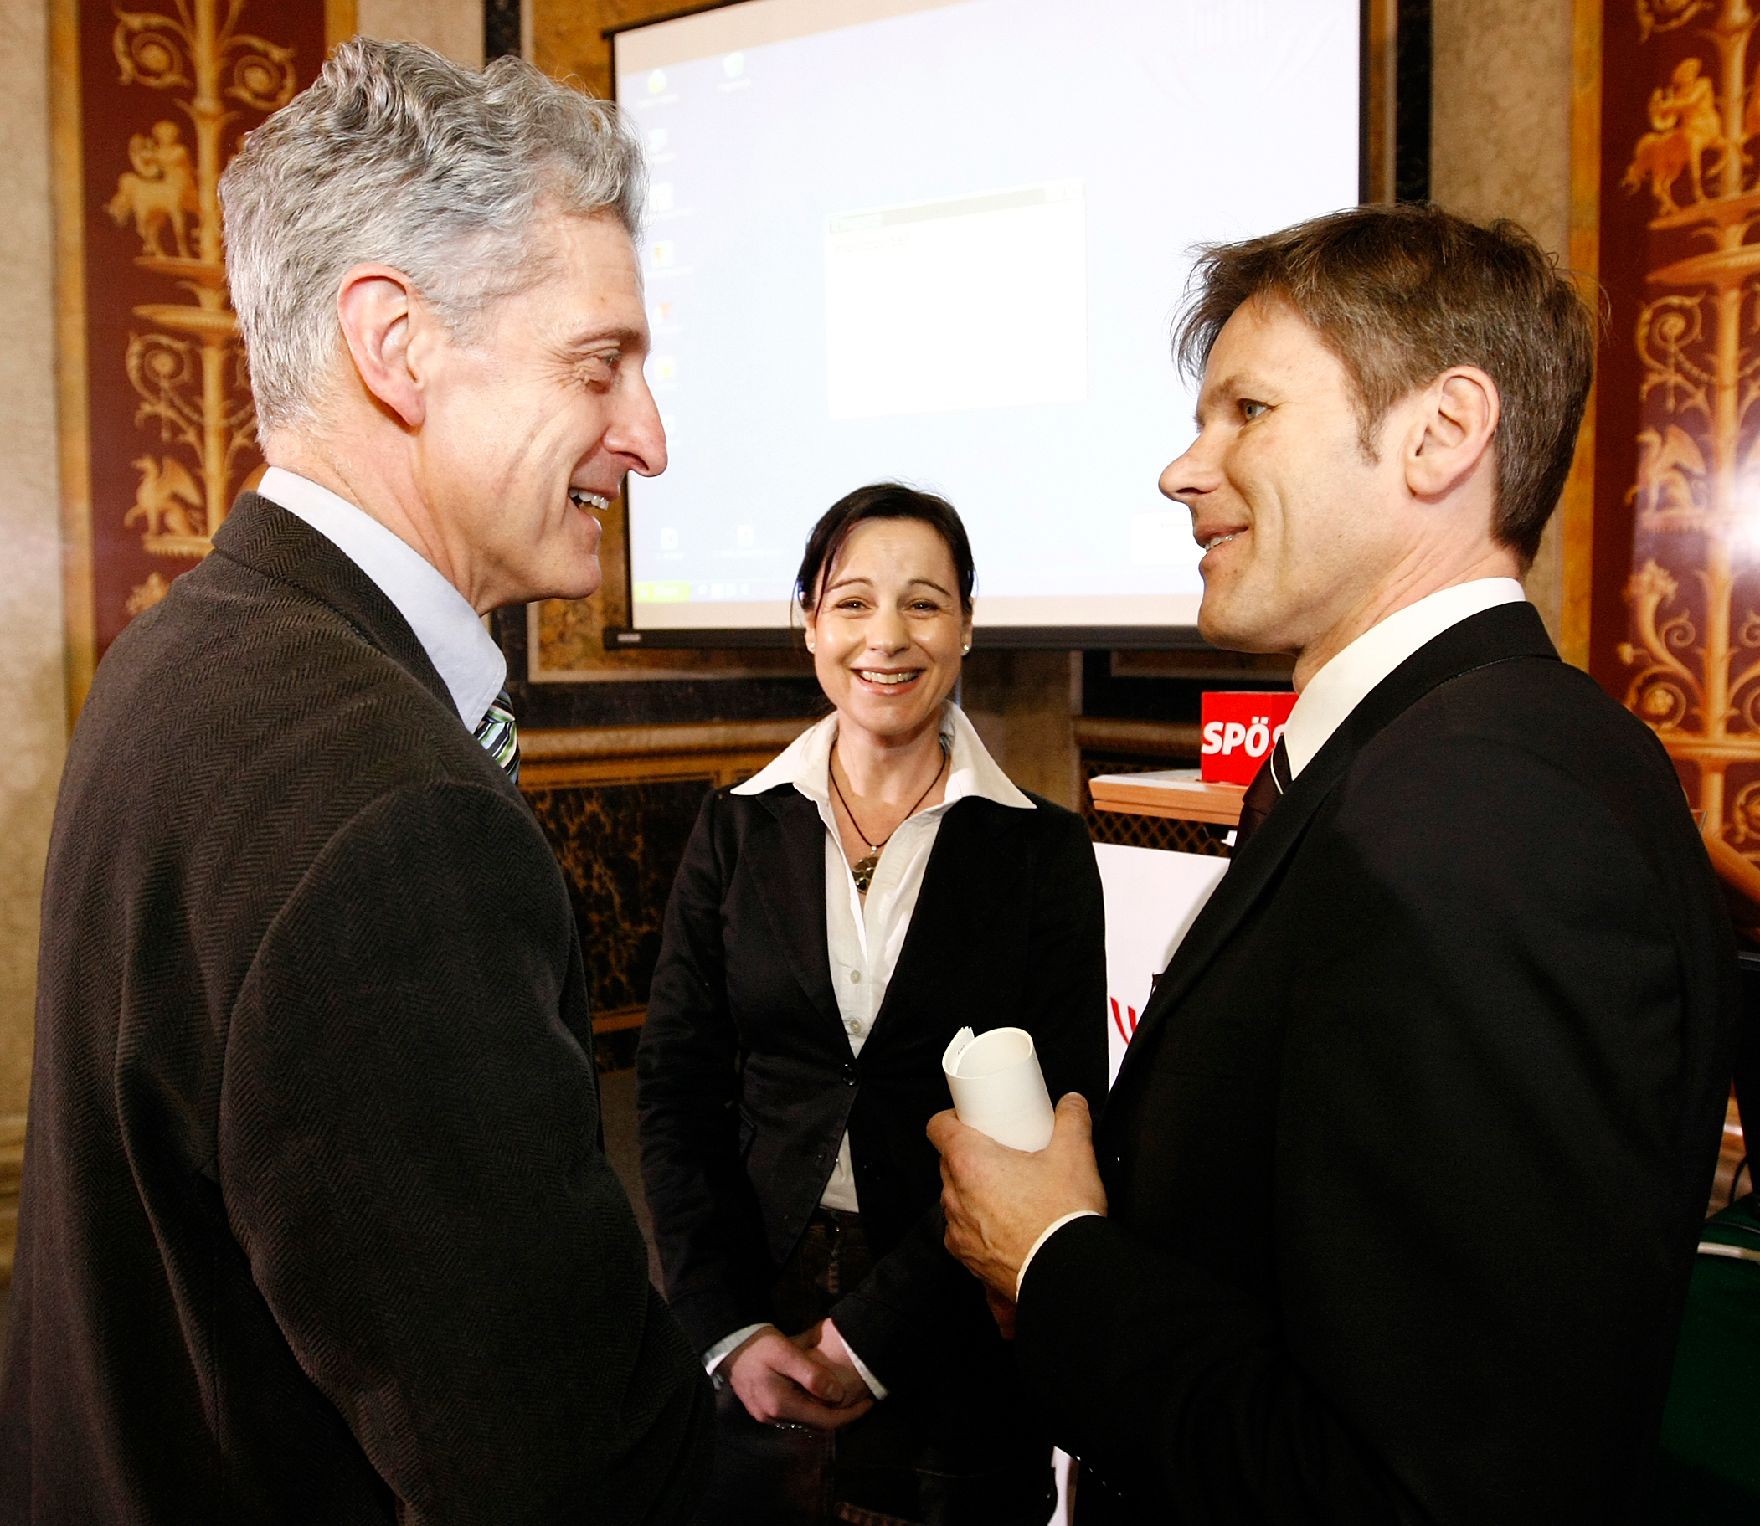 Am 26. Februar 2010 fand im Parlament eine Veranstaltung zum Thema "Informations- und Kommunikationstechnologie" statt. Im Bild Staatssekretär Josef Ostermayer (r.) im Gespräch mit SPÖ-Klubobmann Josef Cap (l.).